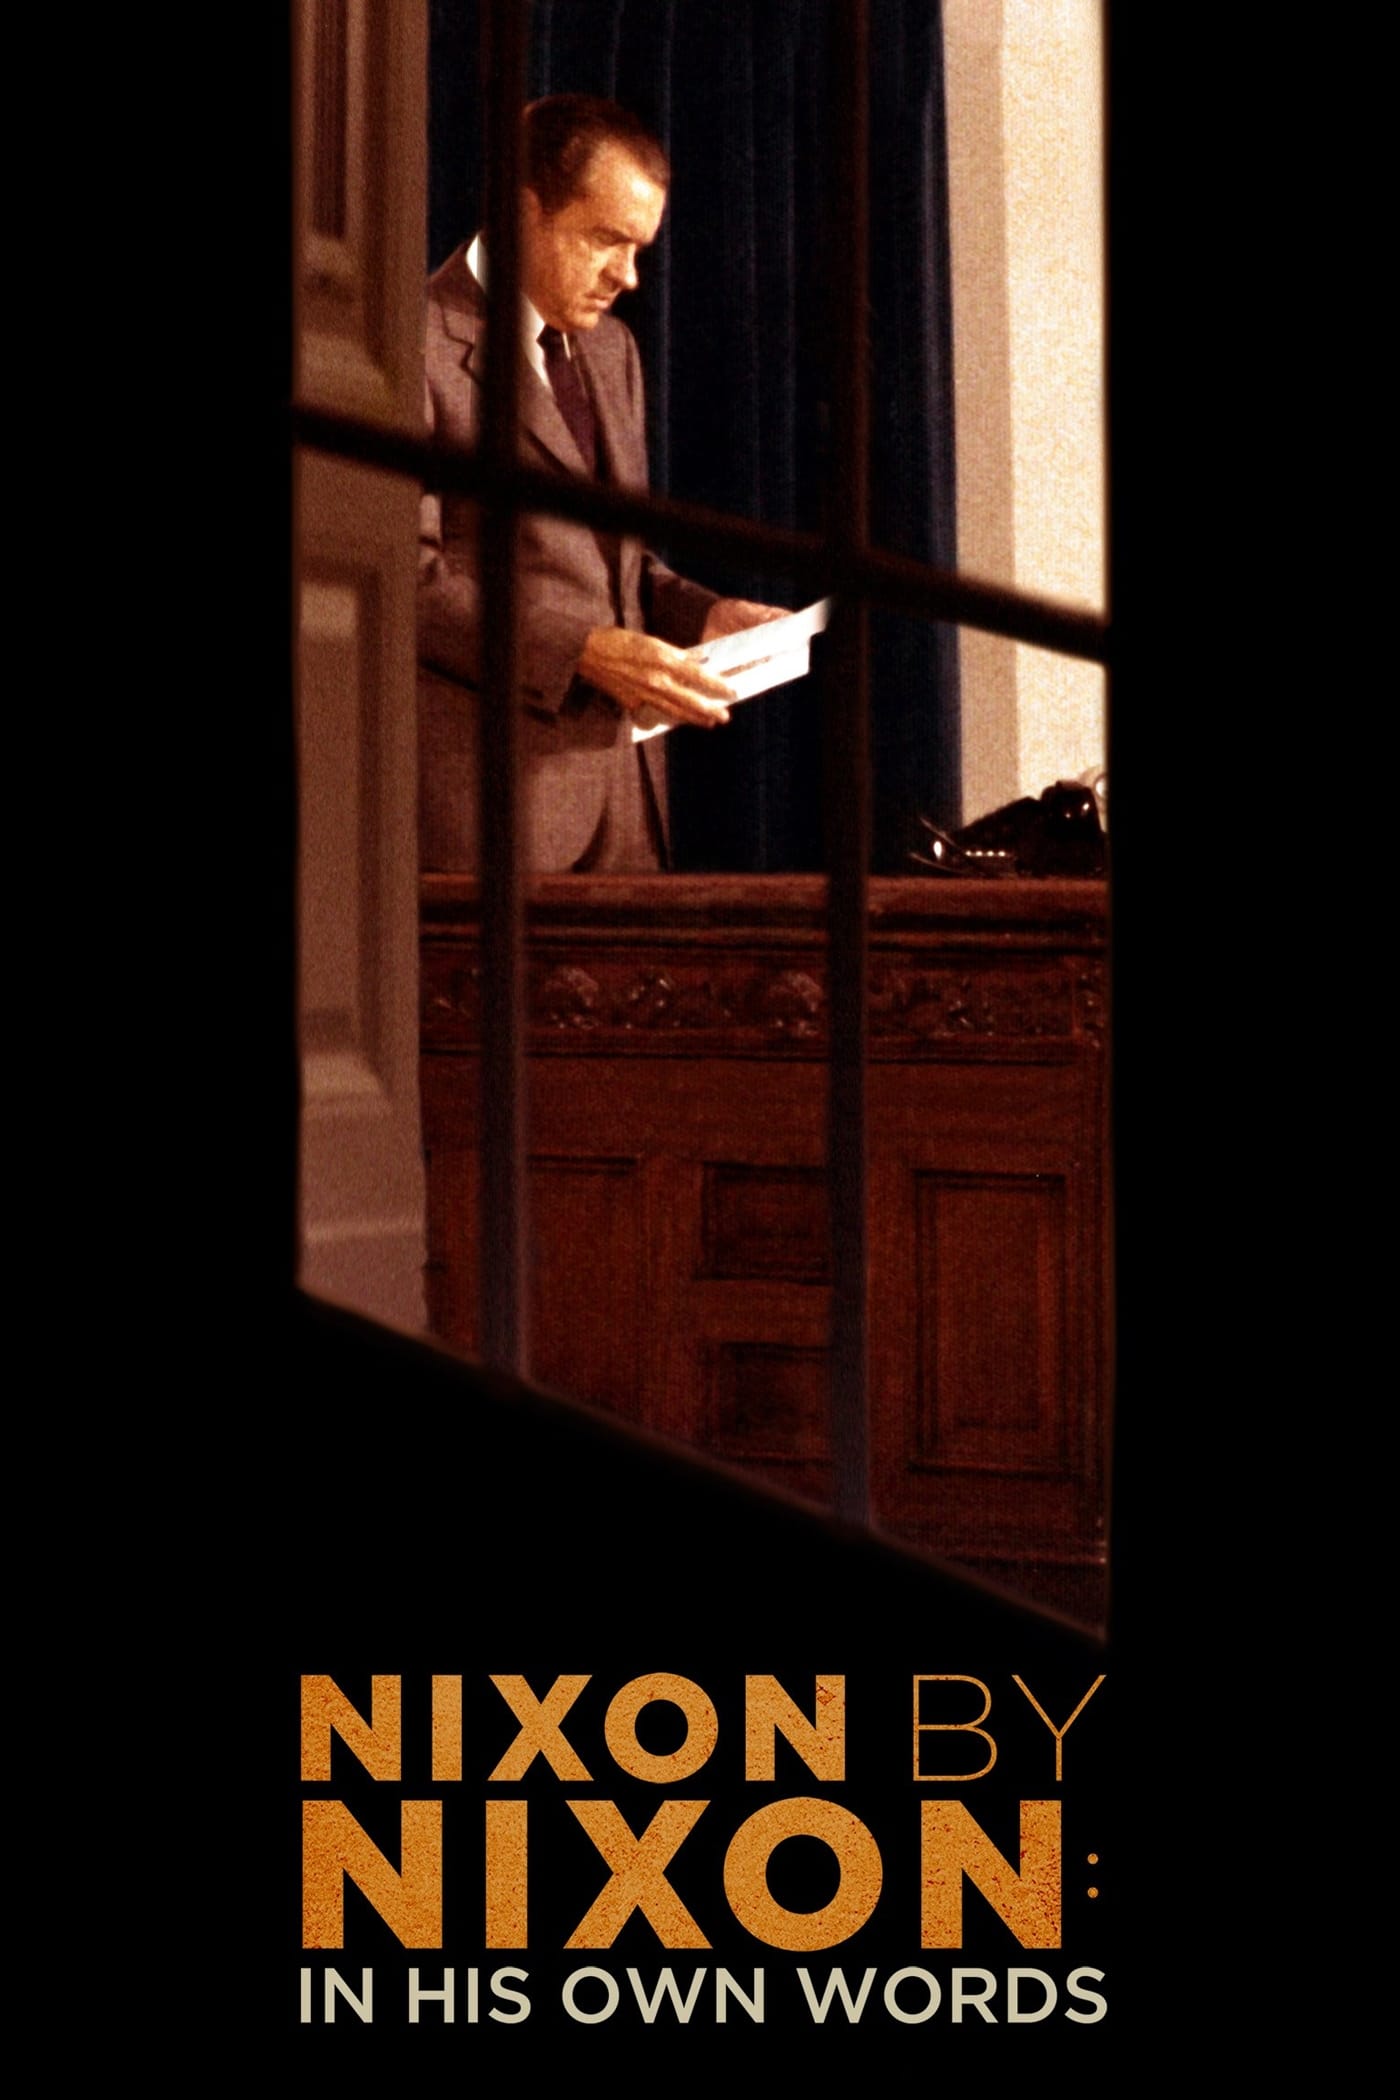 Caratula de Nixon by Nixon: In His Own Words (Nixon al desnudo: las cintas secretas) 